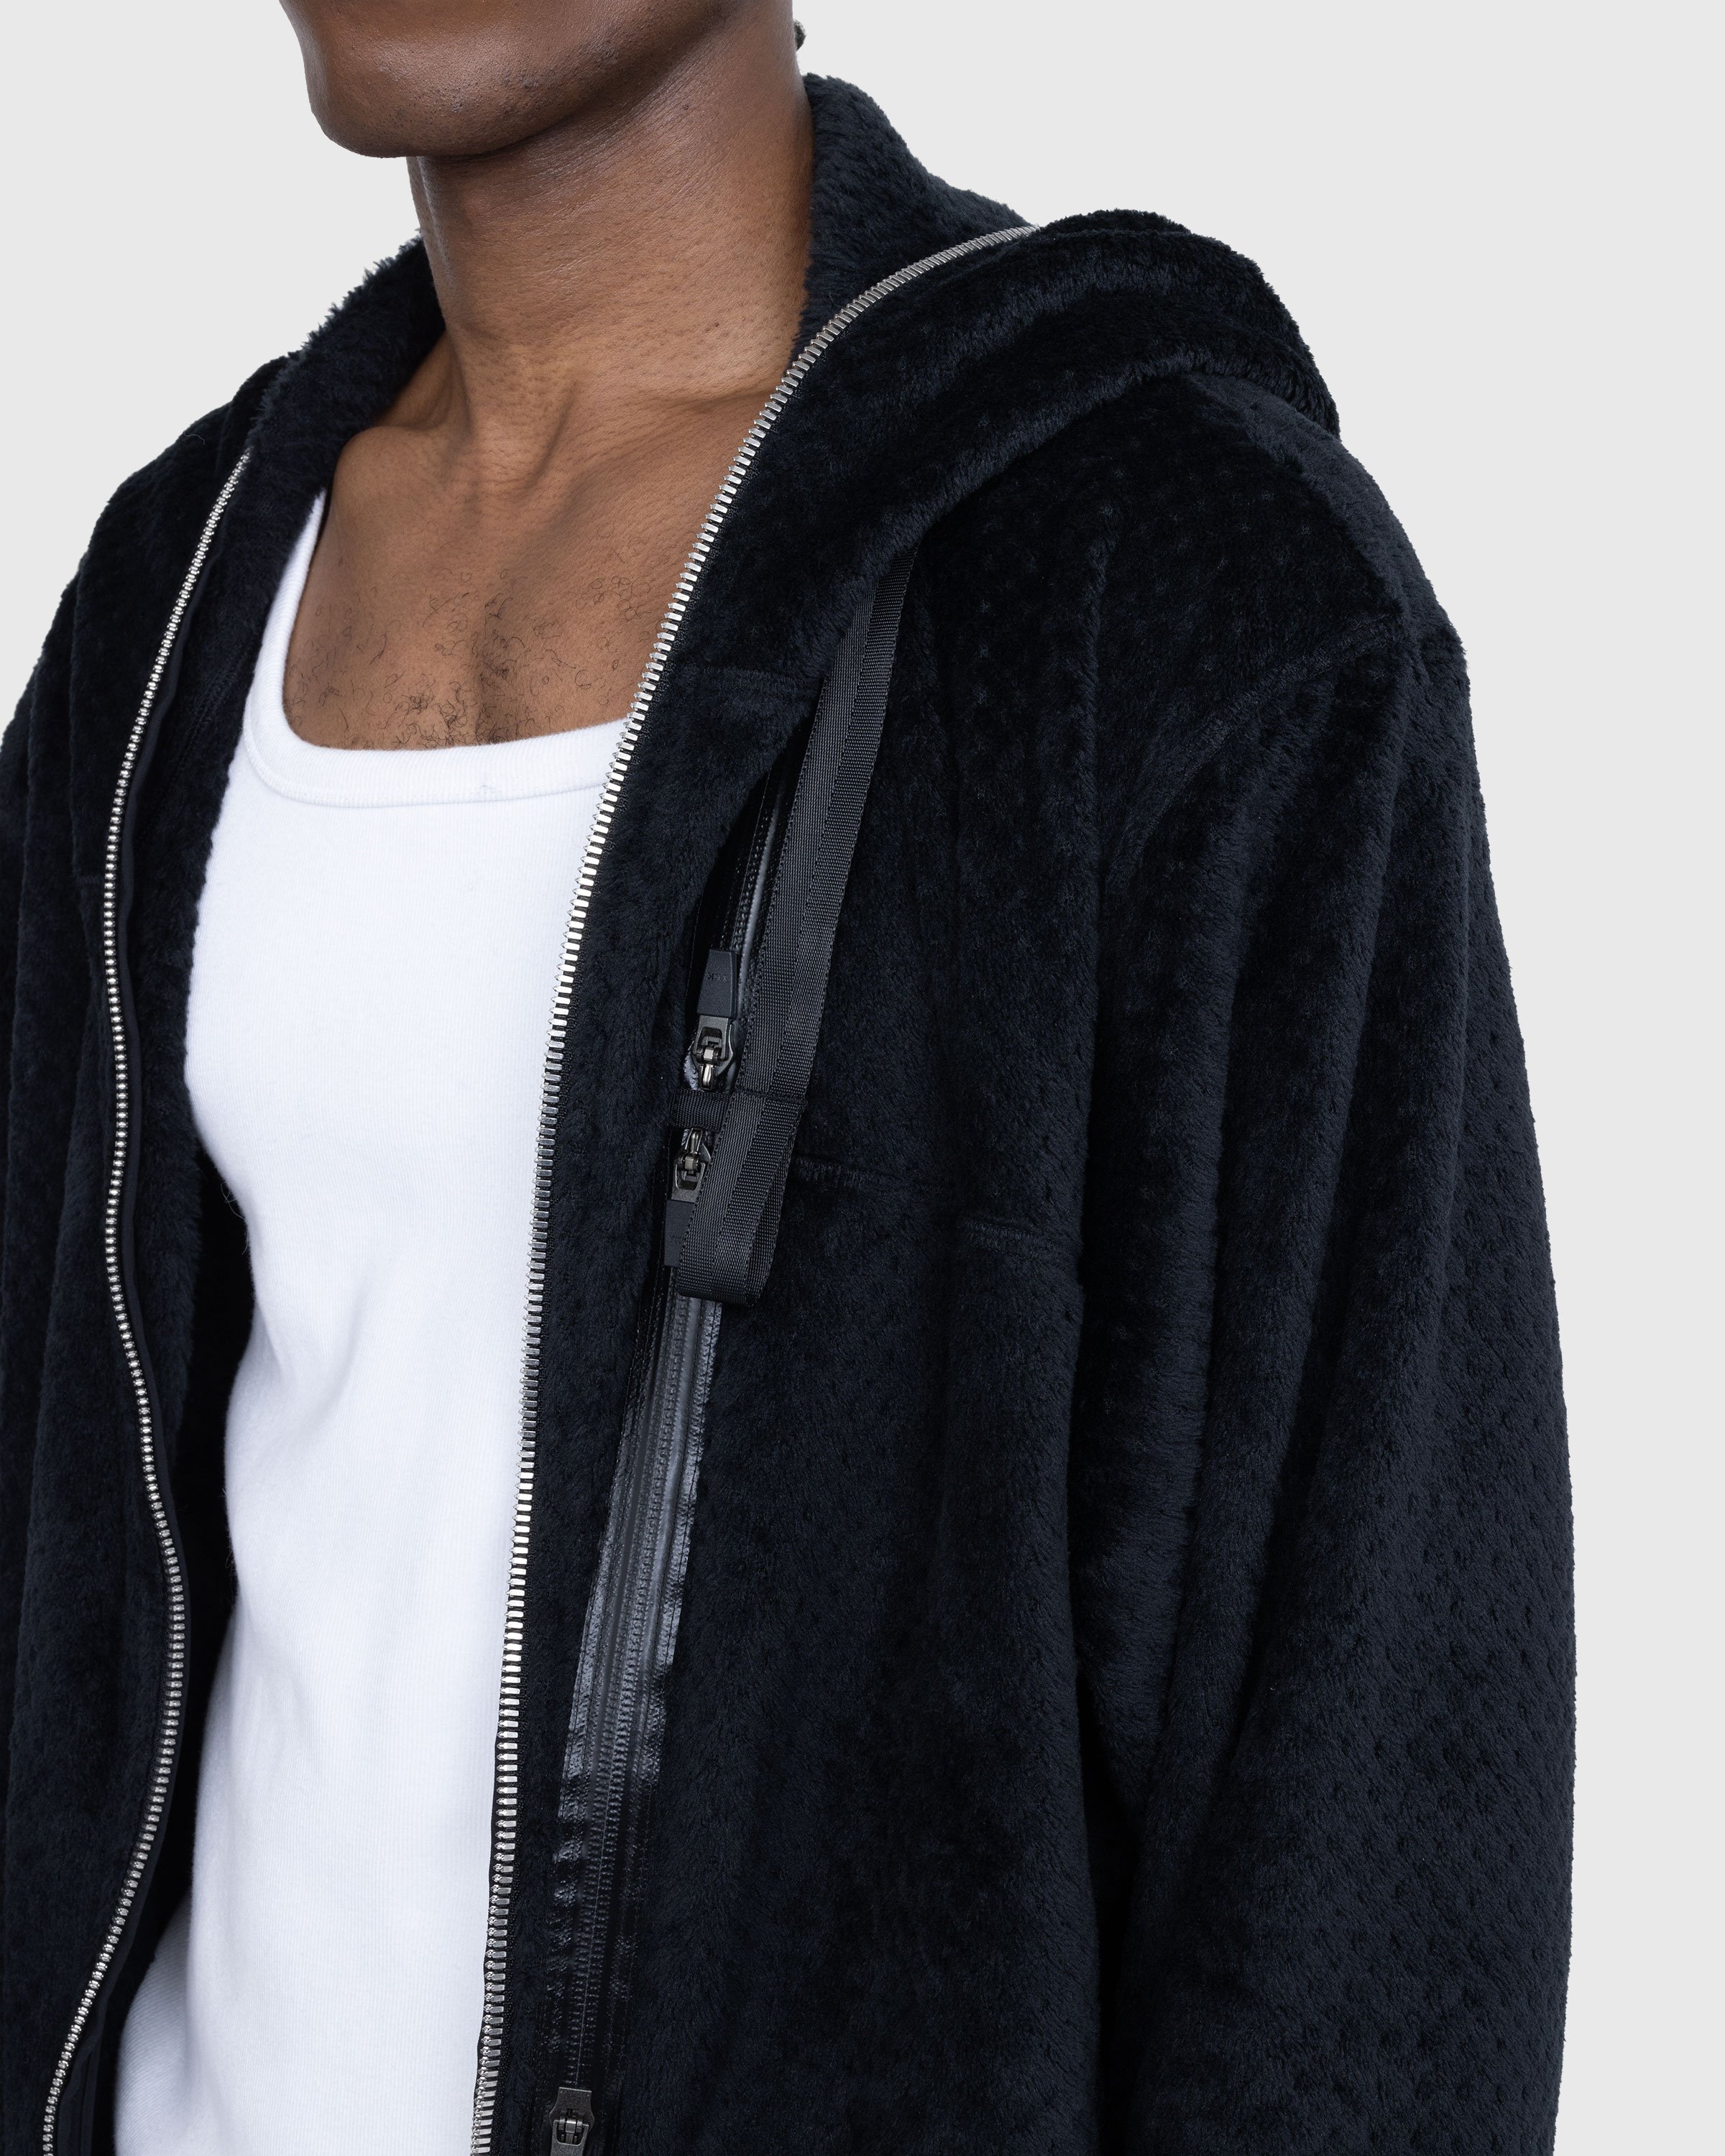 ACRONYM - J117-HL Jacket Black - Clothing - Black - Image 5